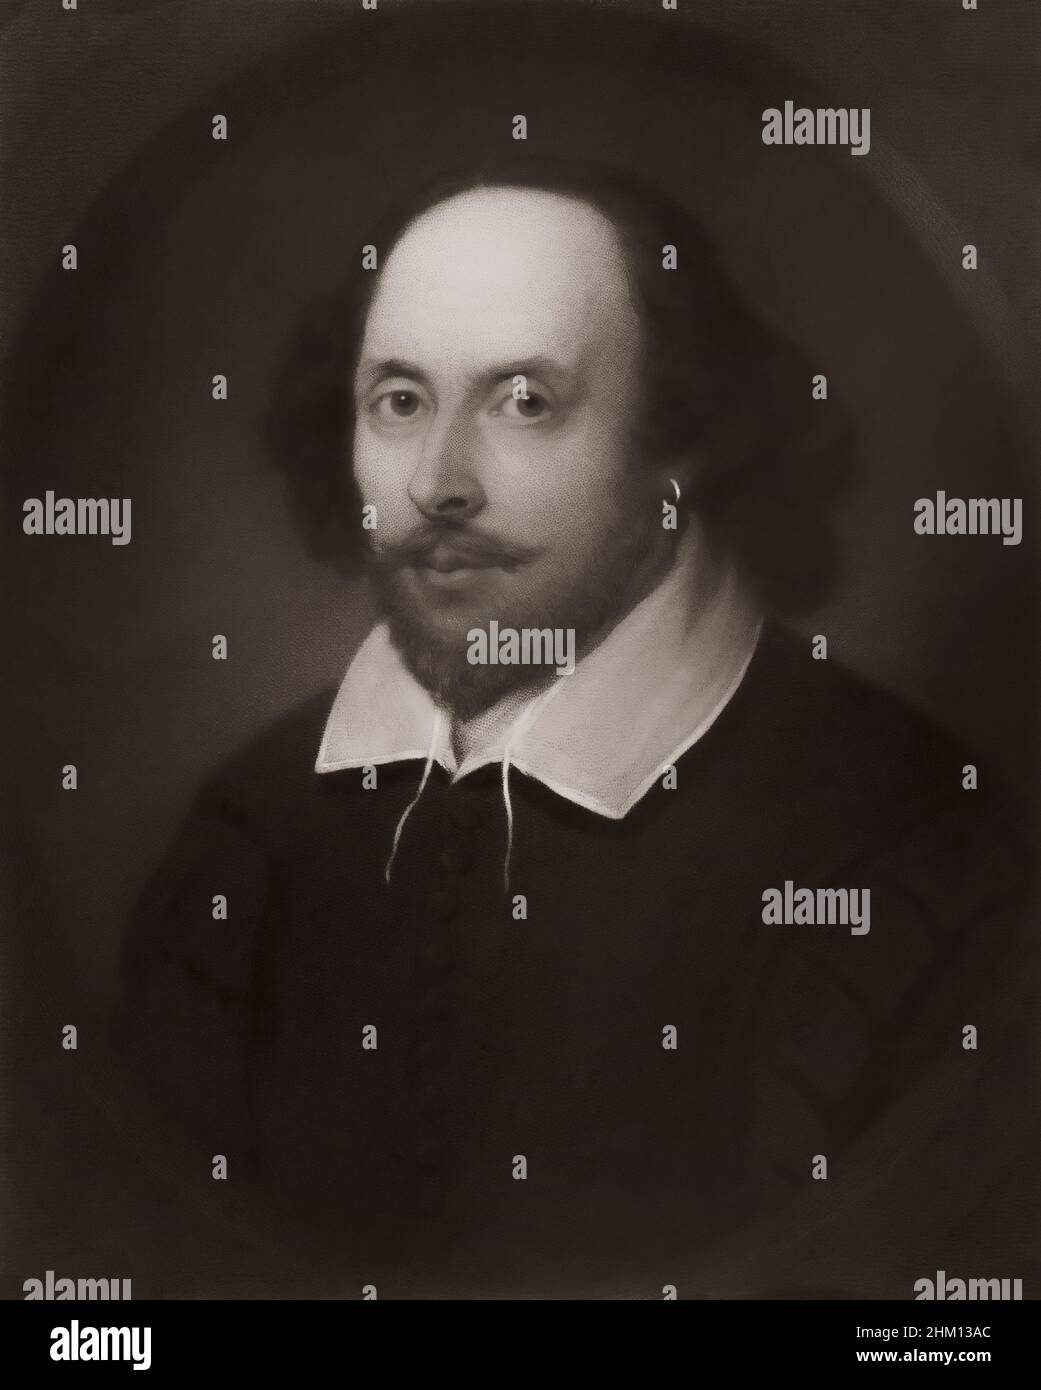 William Shakespeare, 1564 - 1616, Anglais, dramaturge, poète et acteur Banque D'Images